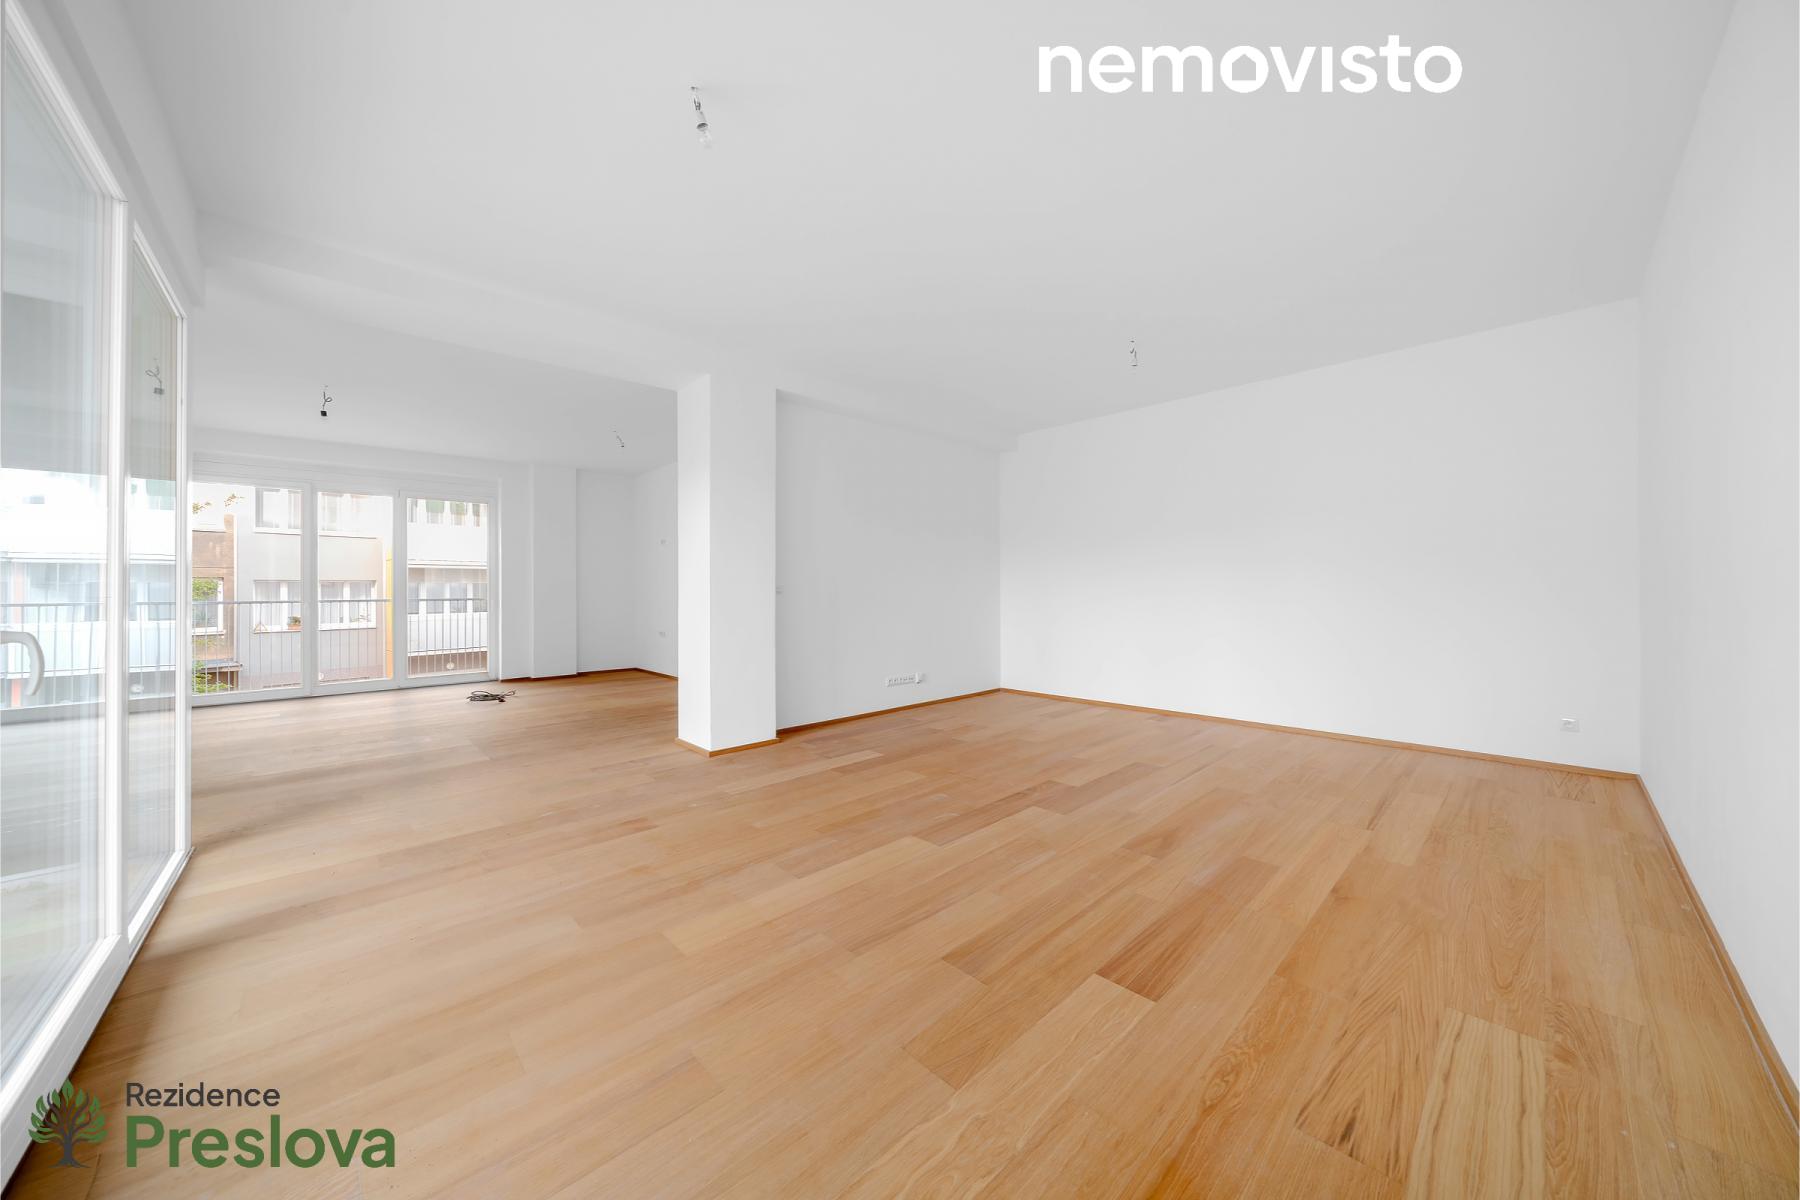 Prodej, novostavba bytu 3+kk s terasou, ul. Preslova, Ostrava - centrum, 128 m2, obrázek č. 1